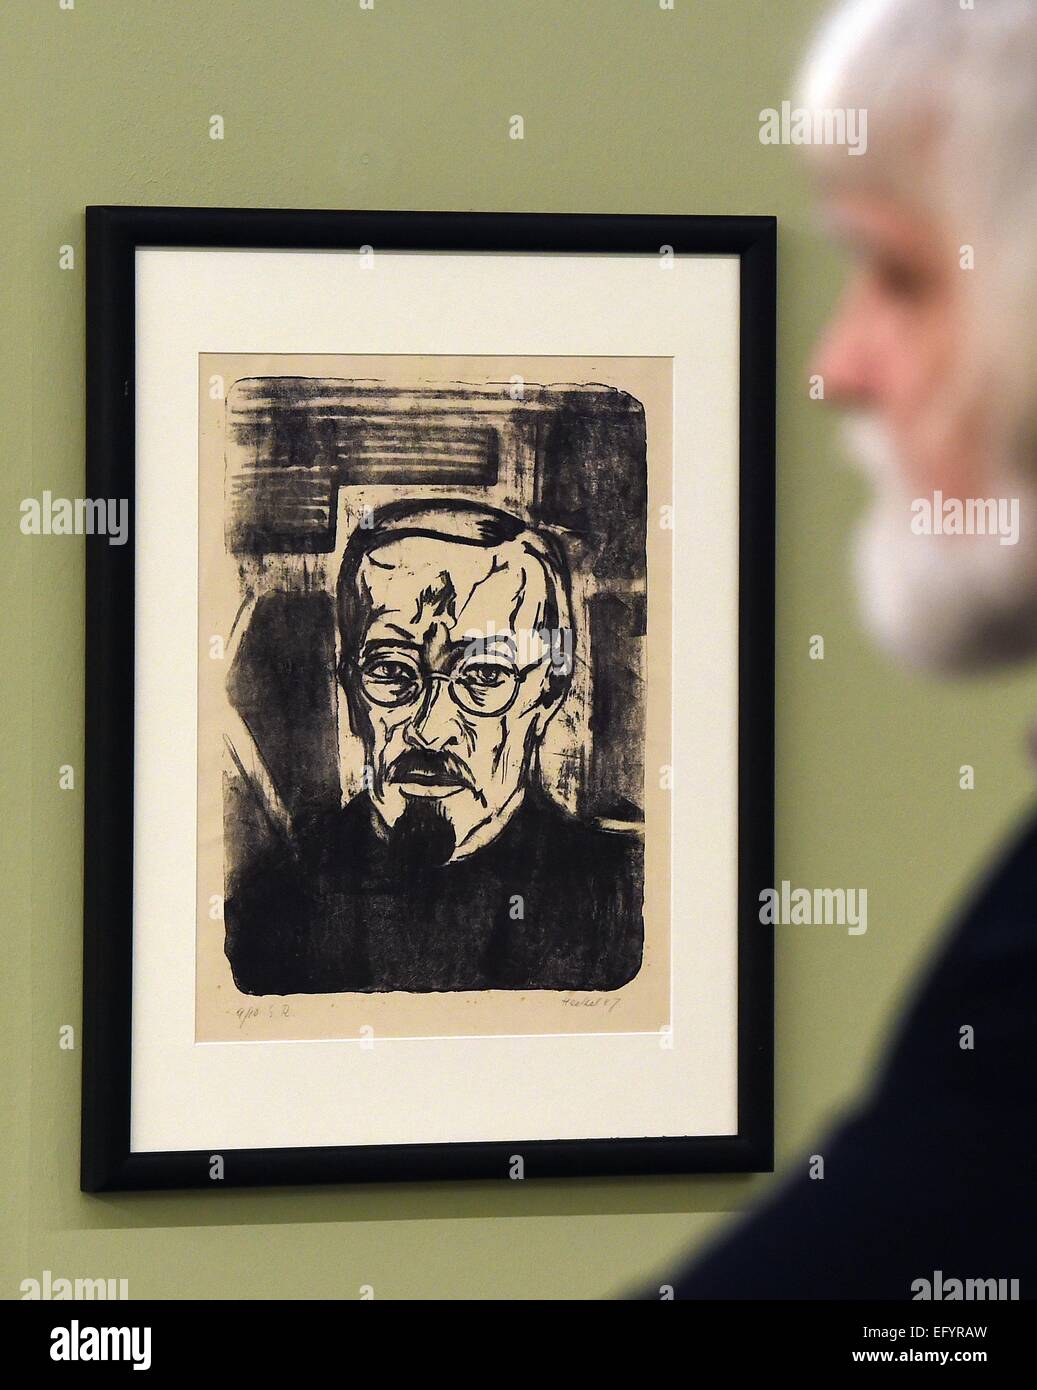 Un visiteur examine un auto-portrait toile de l'artiste Karl Schmidt-Rottluff aperçu au cours d'une visite du musée d'art de Moritzburg de Halle, Allemagne, 12 février 2015. L'exposition présente 70 œuvres d'art de différents artistes de l'artiste groupe 'Le pont'. Photo : Hendrik Schmidt/ZB Banque D'Images